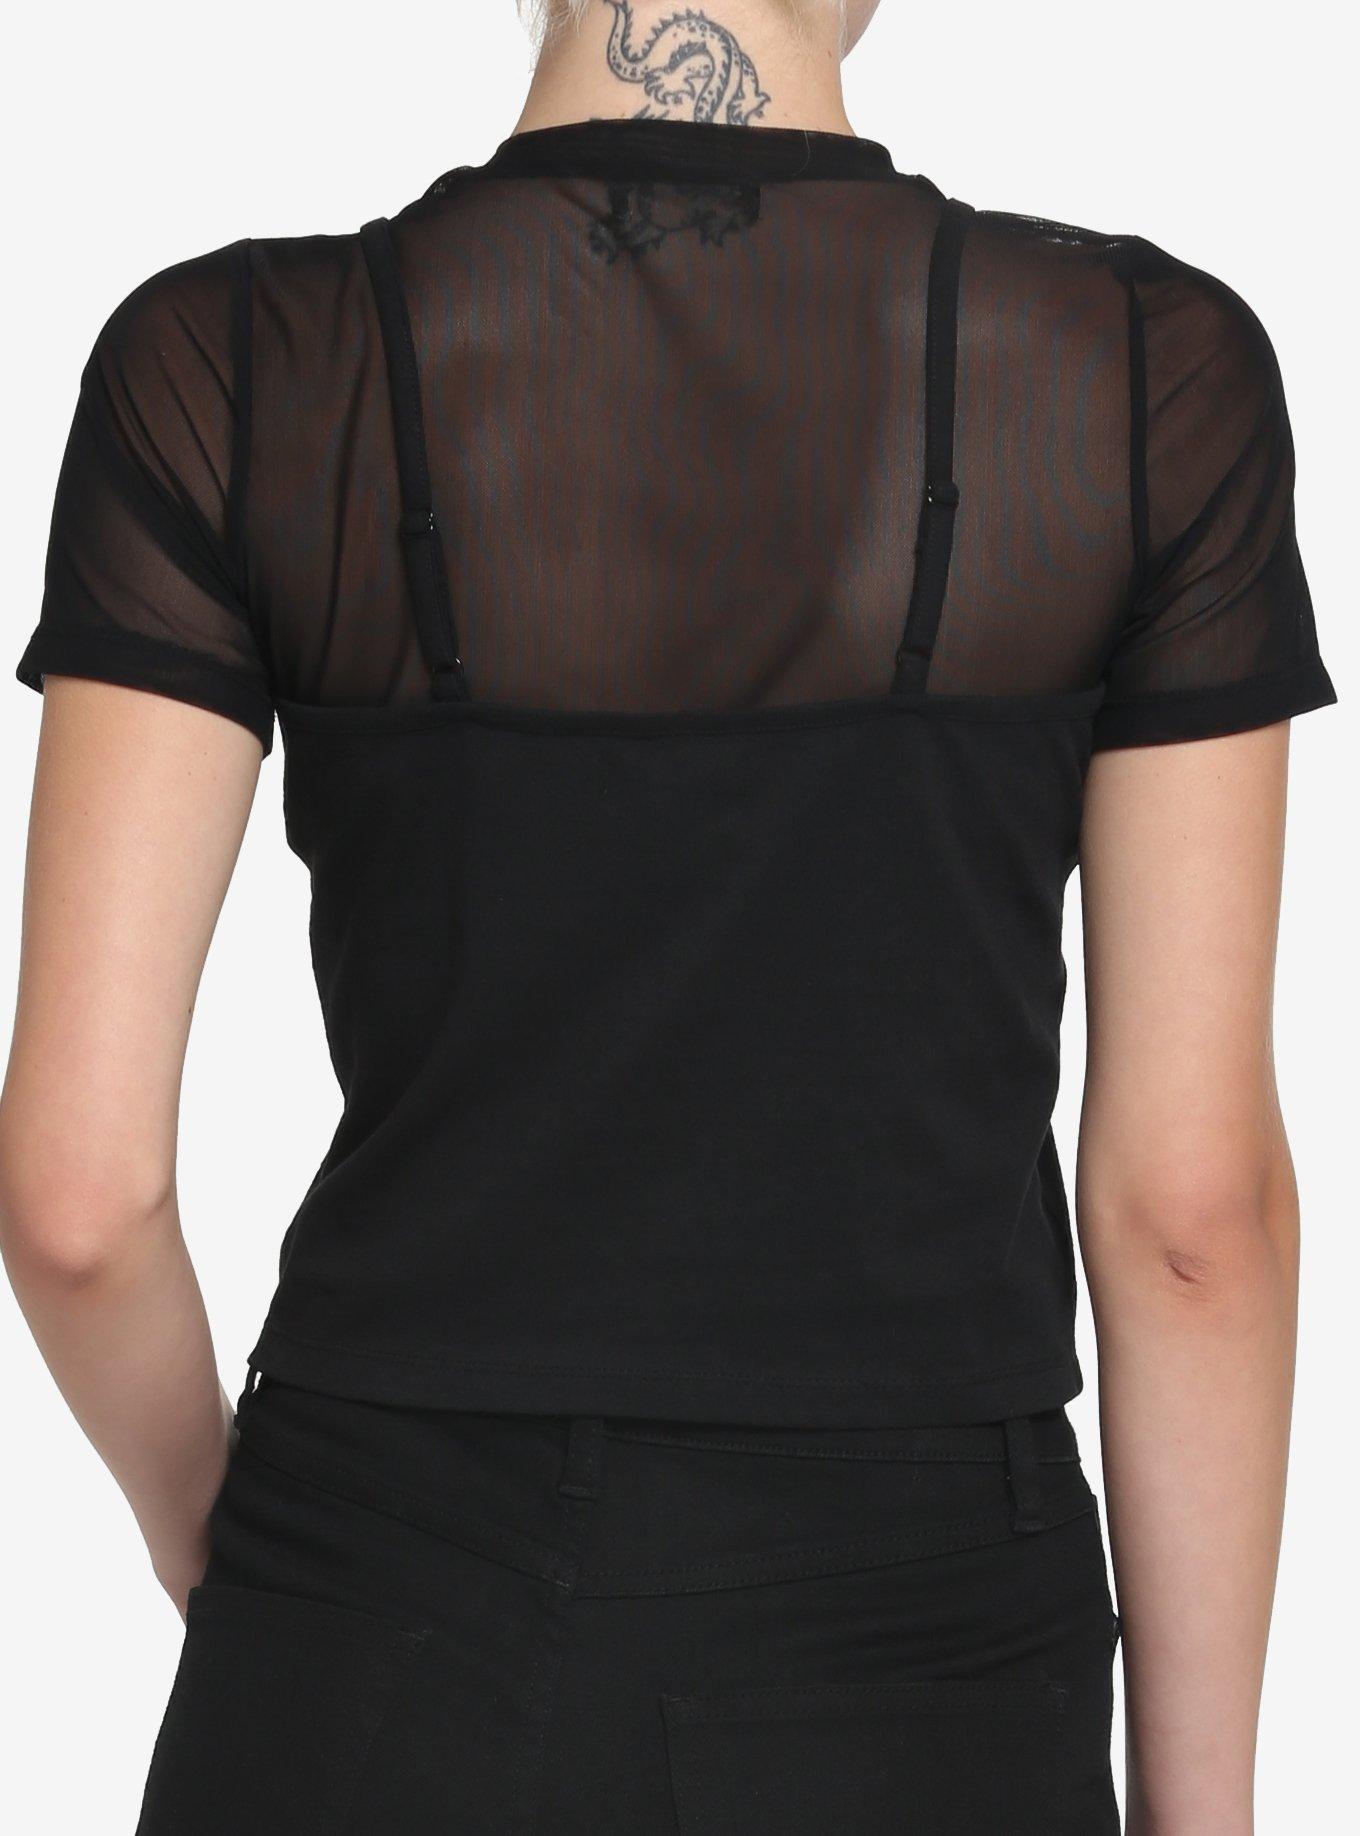 Black Front Lace Girls Twofer T-Shirt, BLACK, alternate